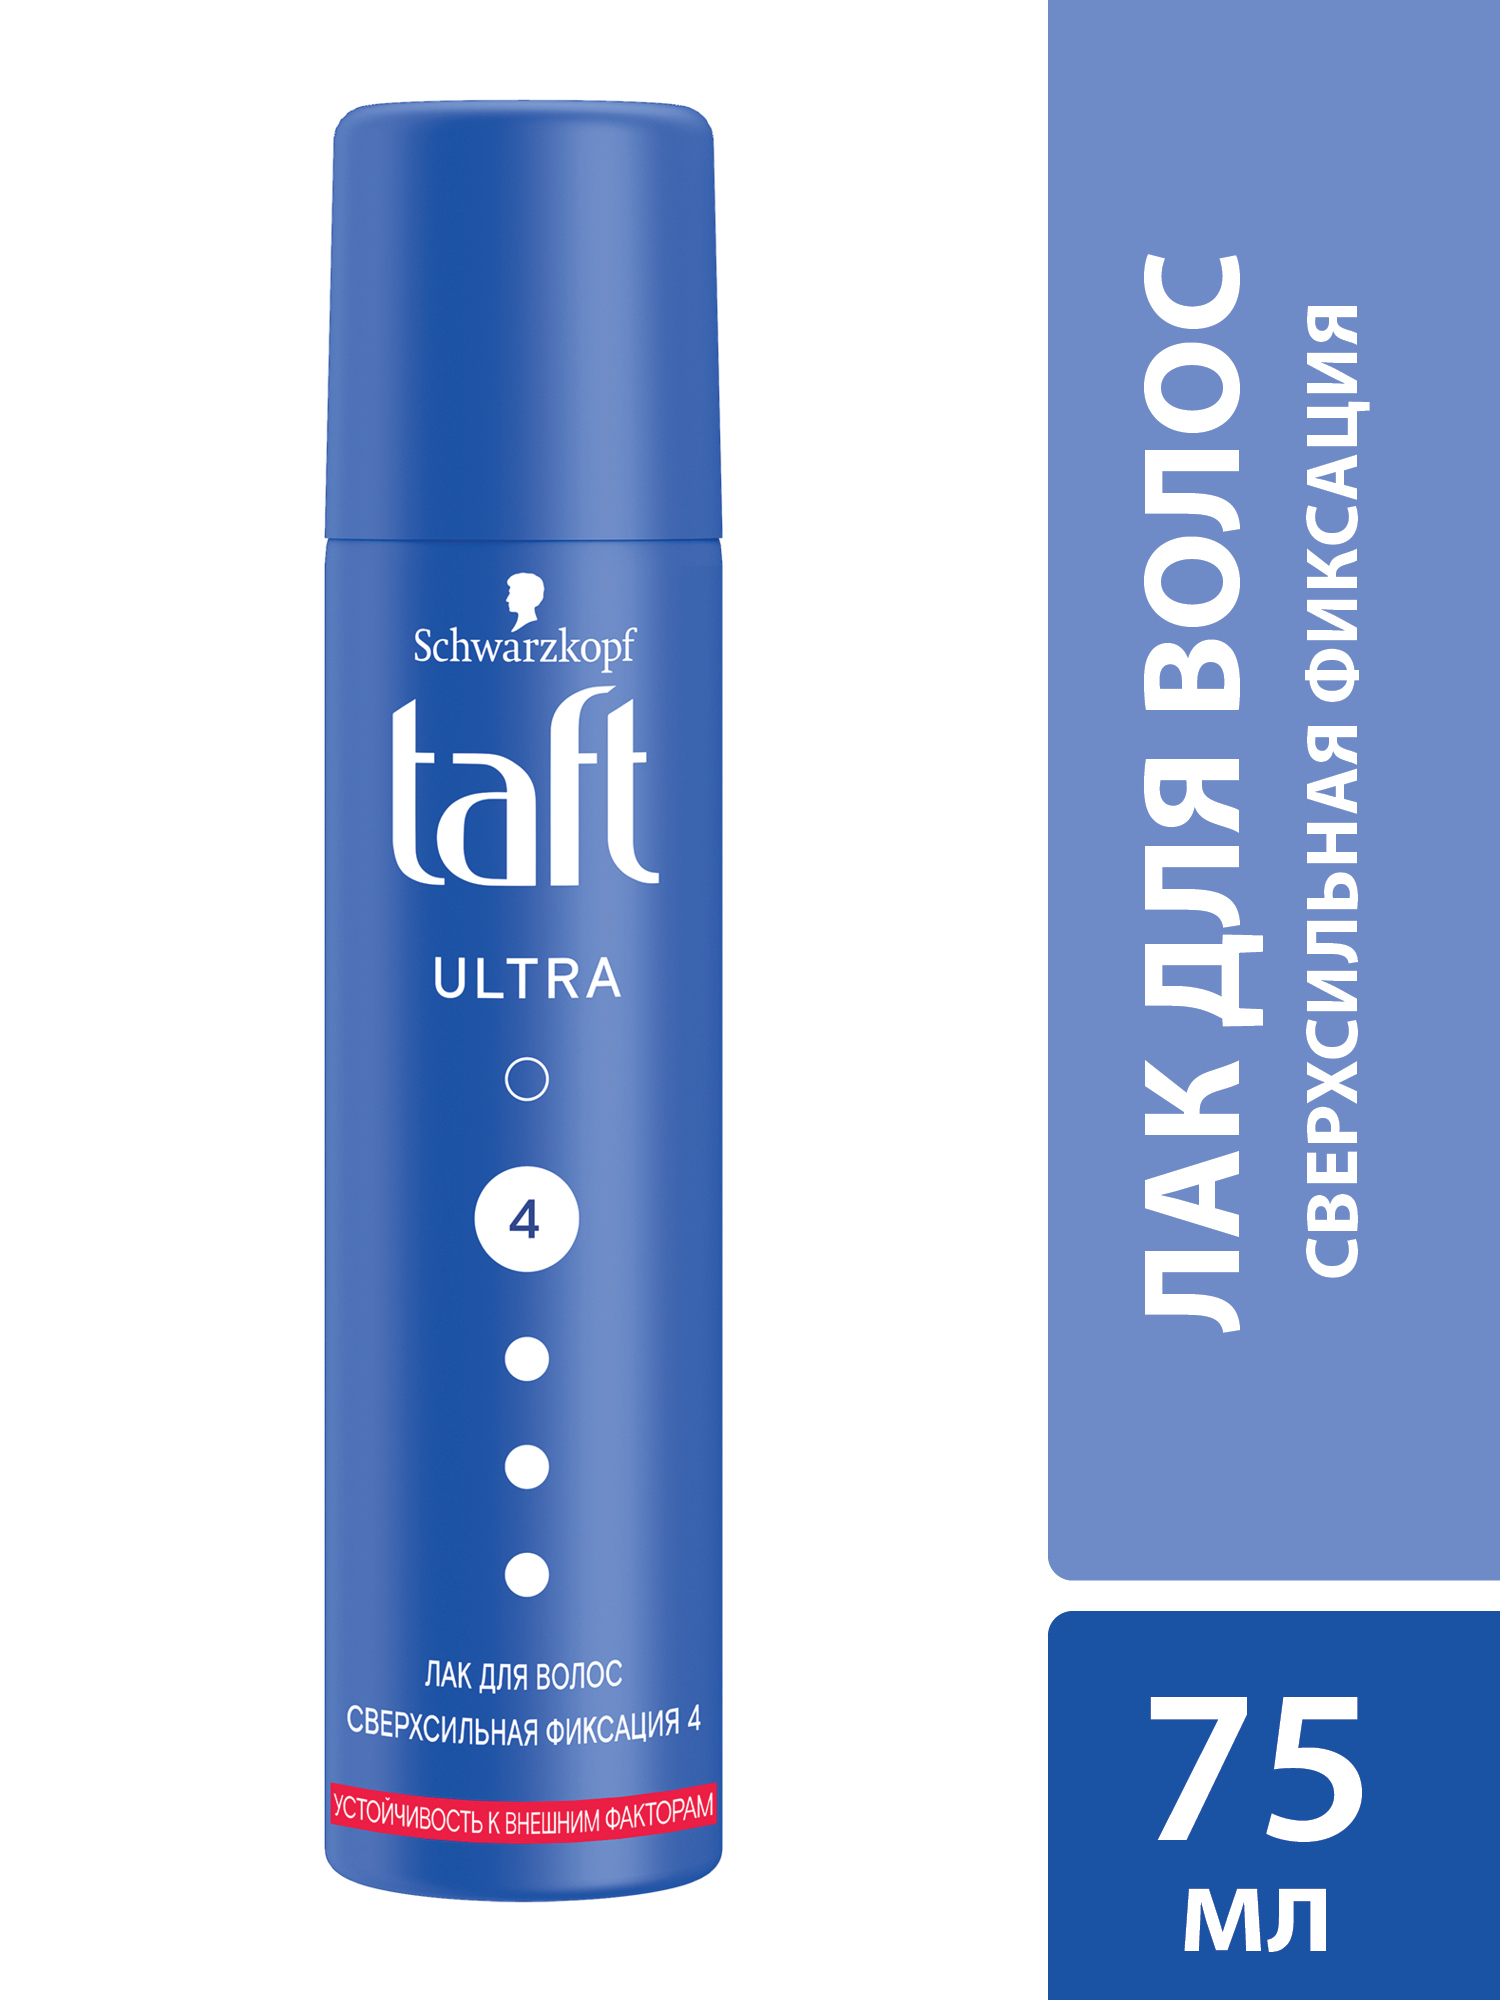 Лак для укладки волос Taft Ultra сверхсильная фиксация 4, 75 мл